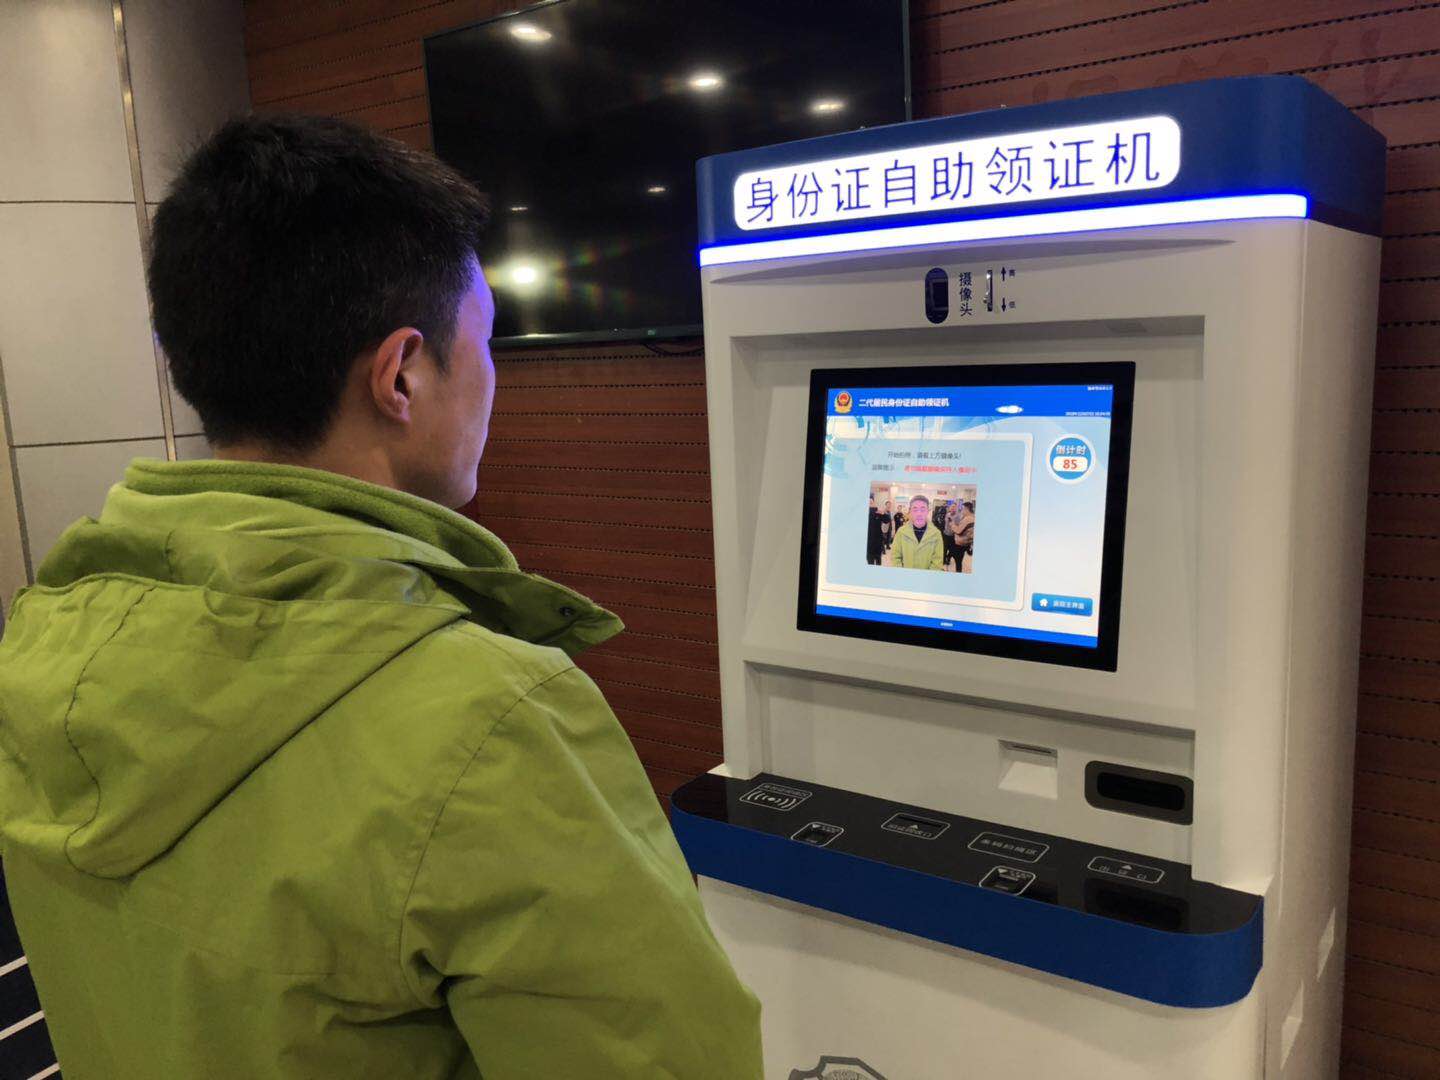 上海首推身份证自助领证机 2分钟取证